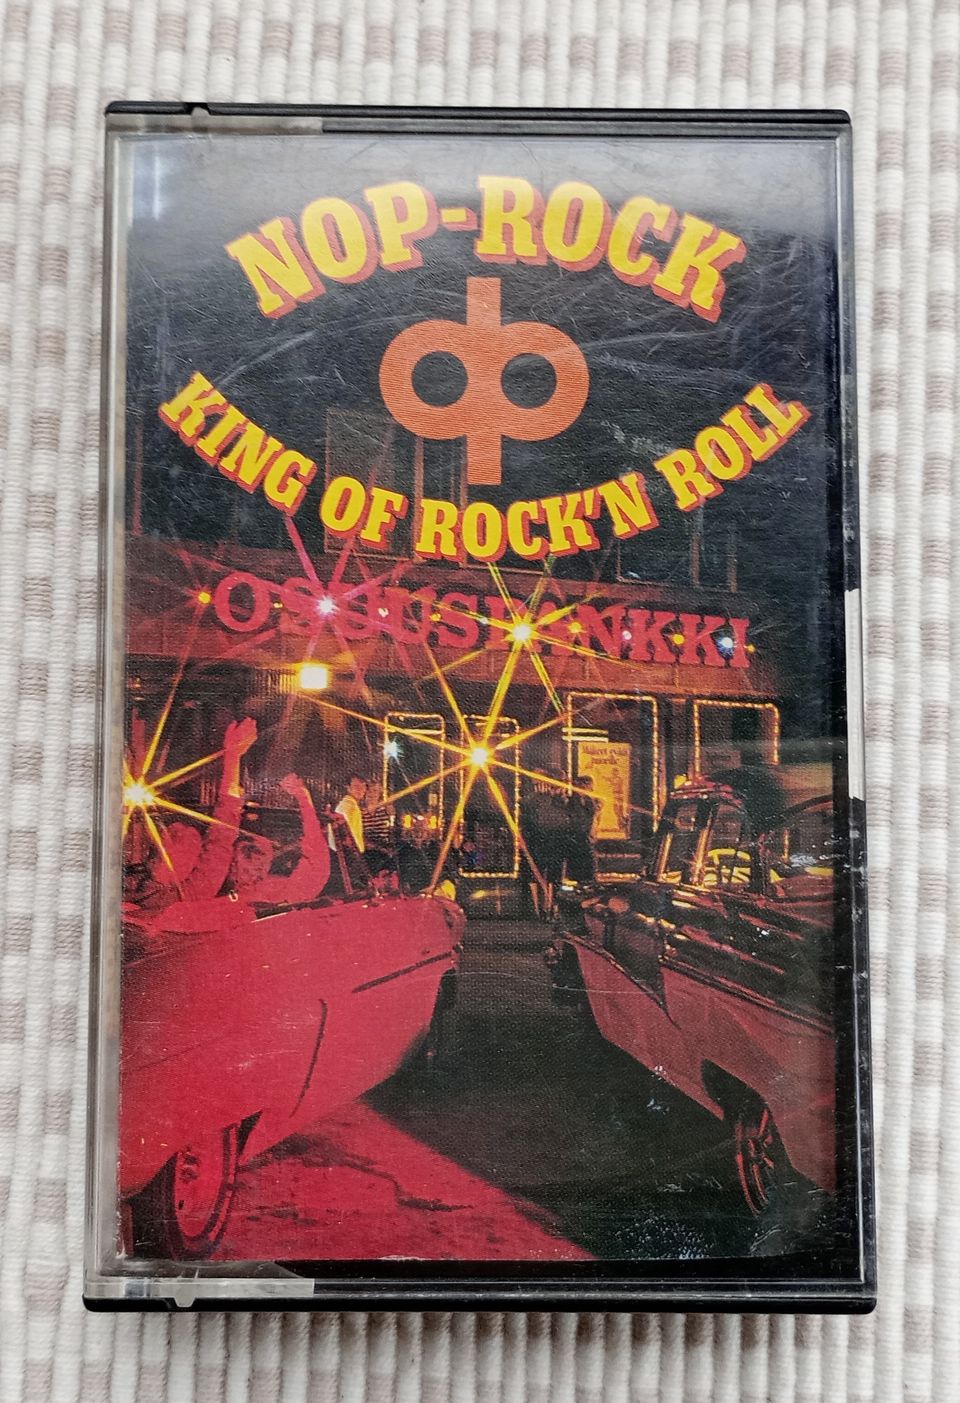 C-kasetti Nop-Rock King Of Rock´n Roll  osuuspankin mainos kasetti